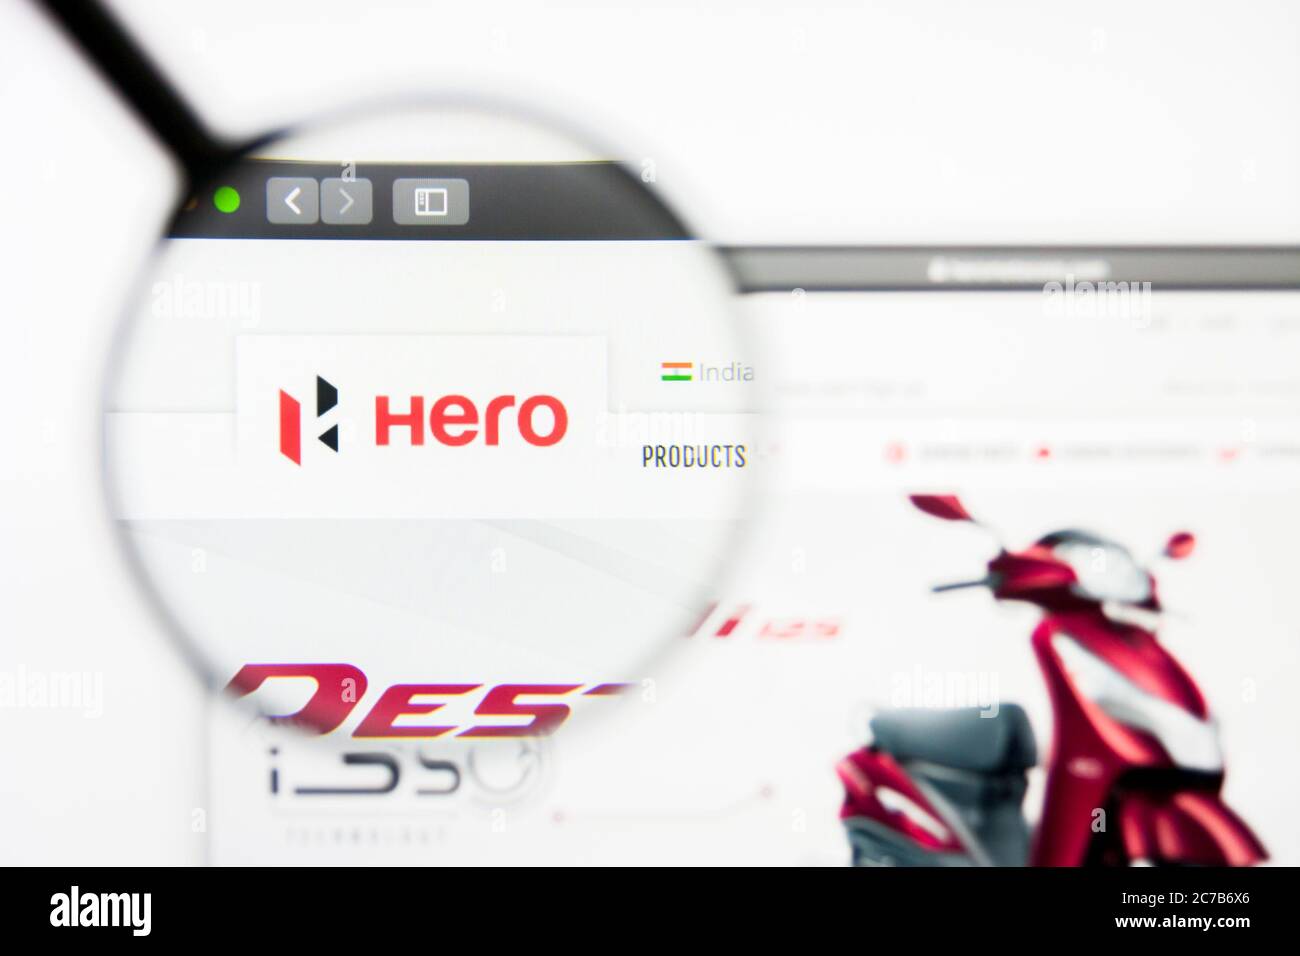 Los Angeles, California, USA - 5 aprile 2019: Editoriale illustrativo della homepage del sito web Hero Motocorp. Logo Hero Motocorp visibile sullo schermo. Foto Stock